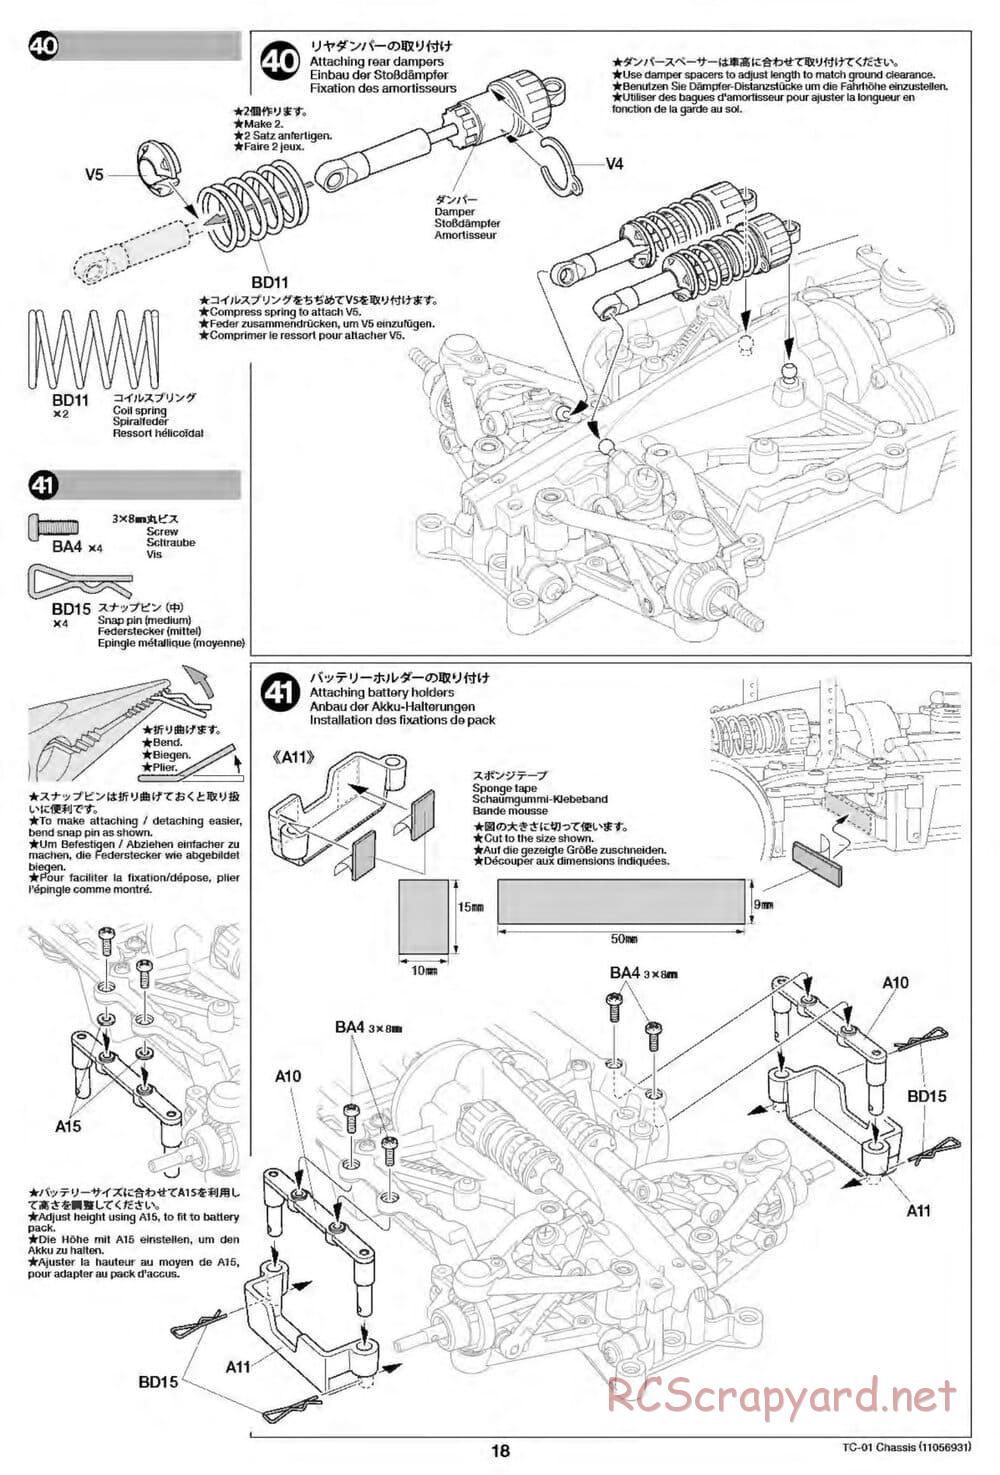 Tamiya - TC-01 Chassis - Manual - Page 18